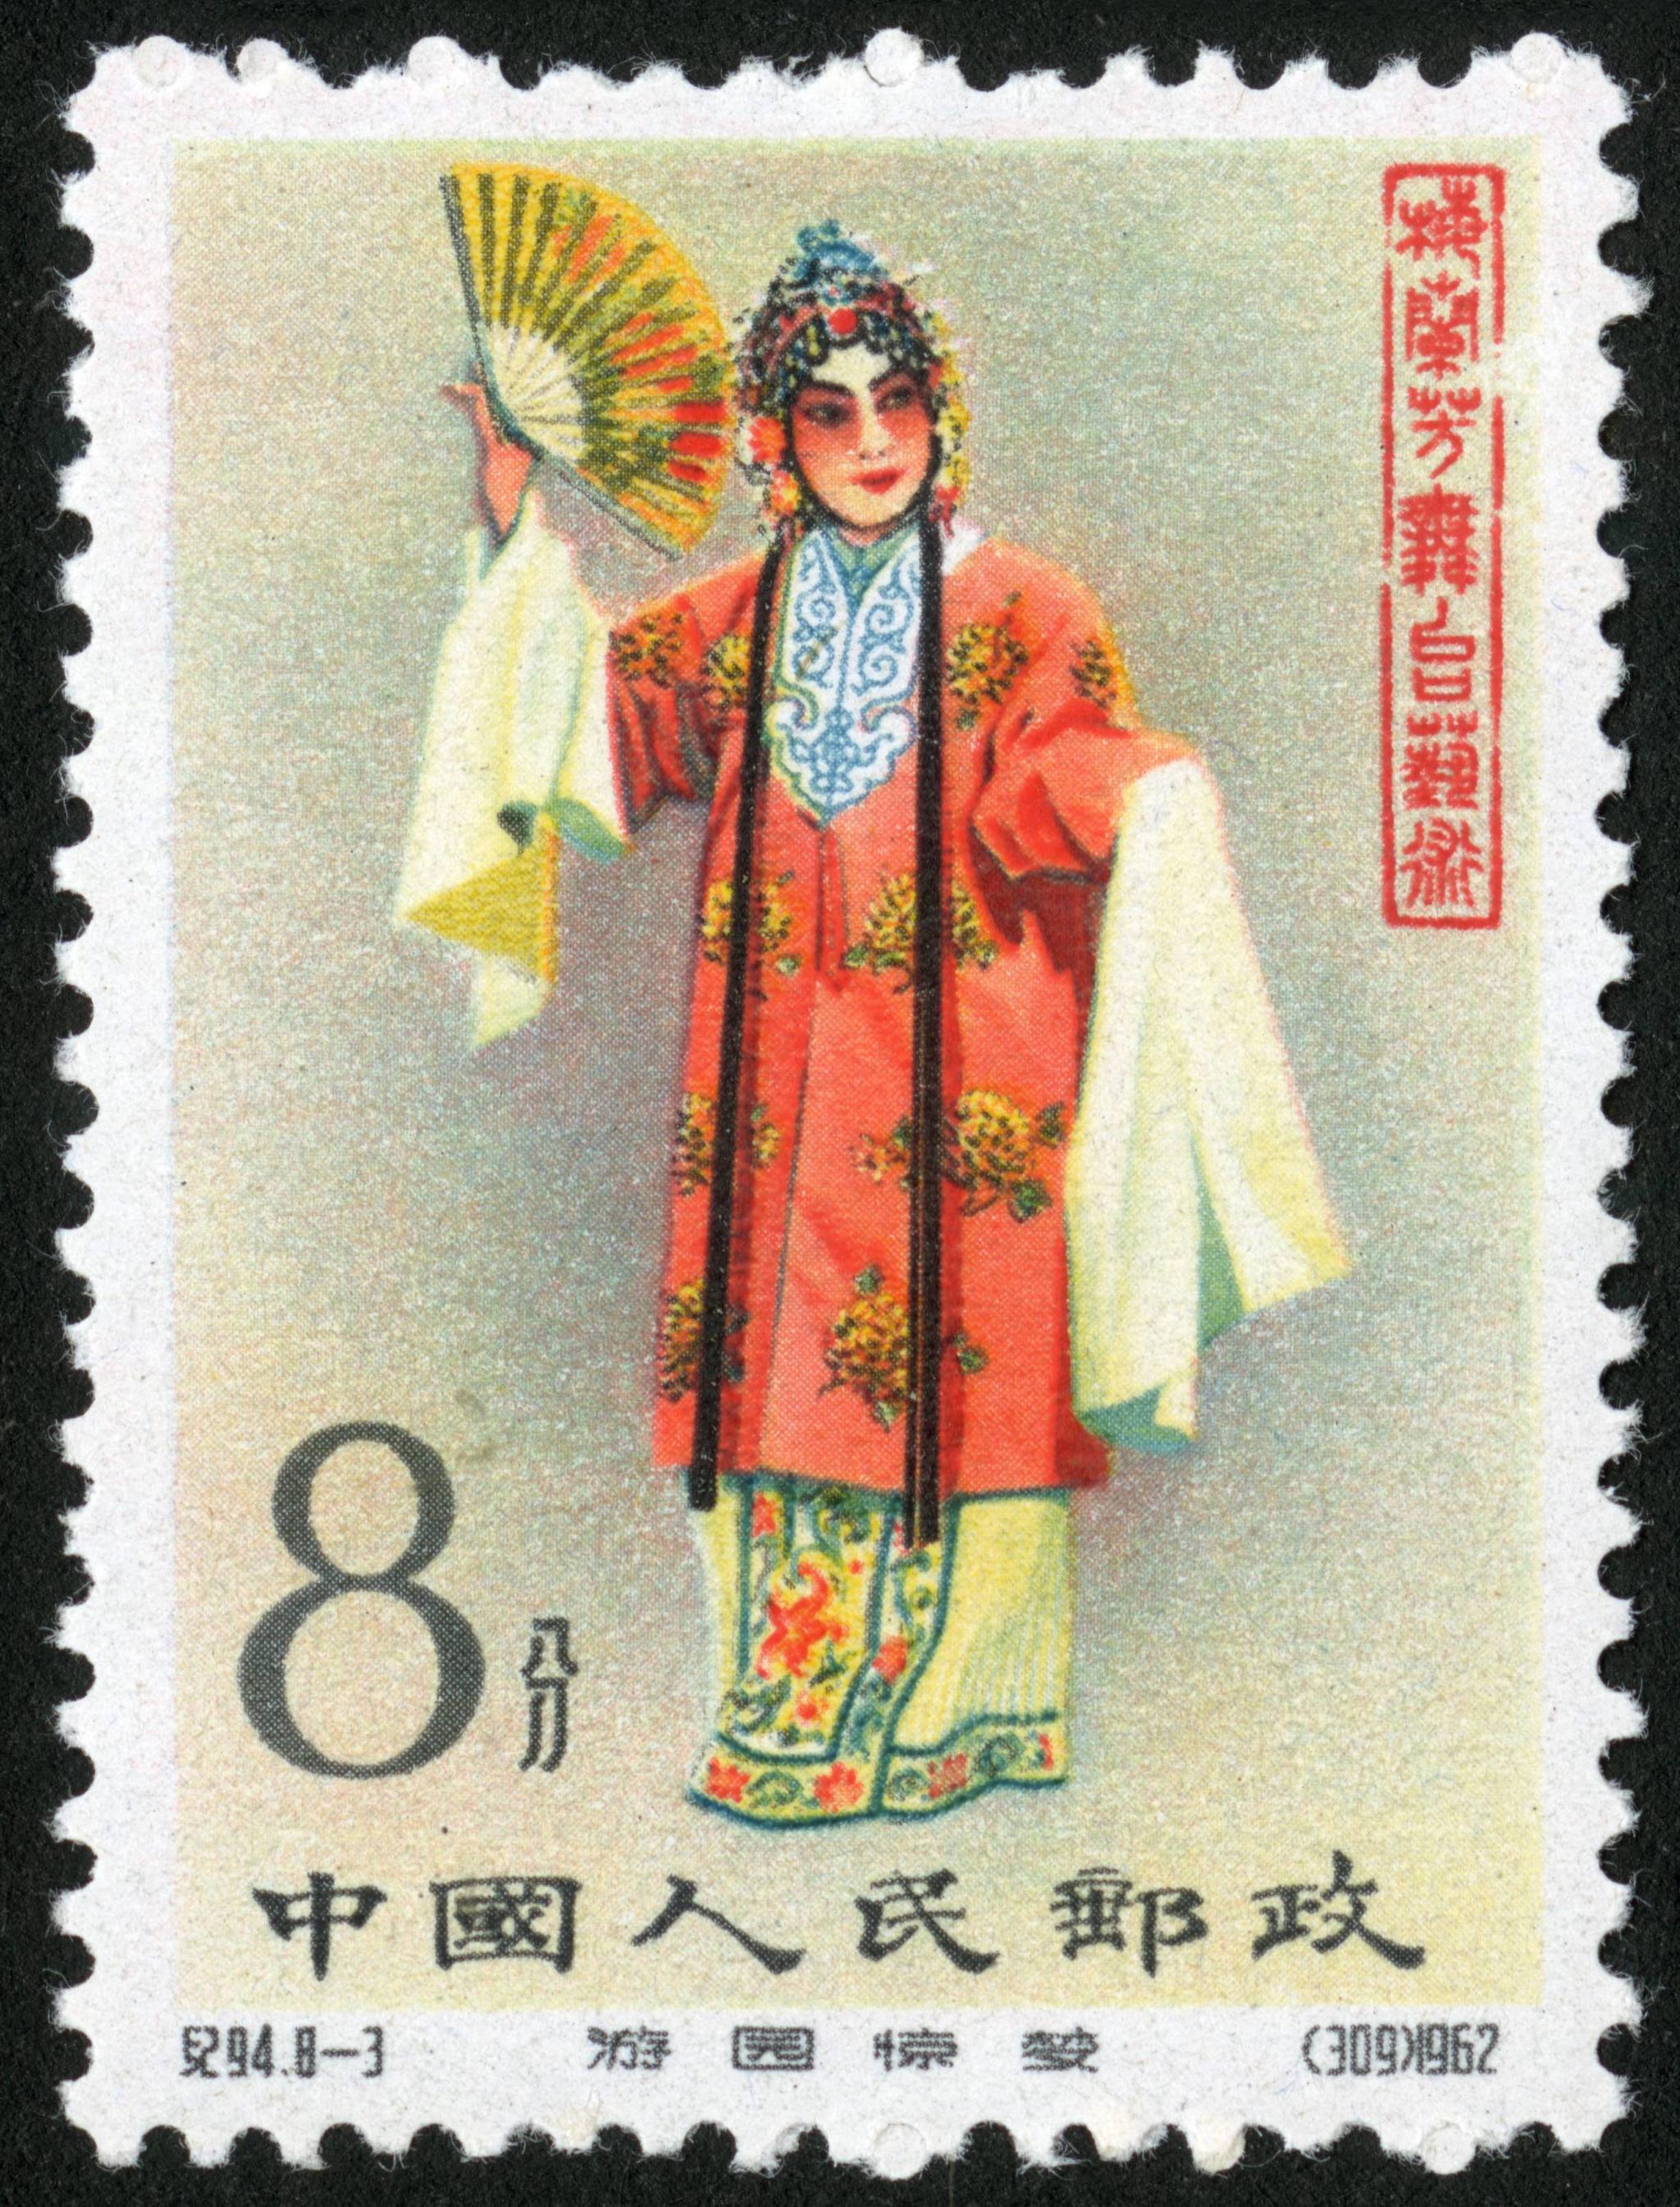 梅兰芳纪念邮票图片